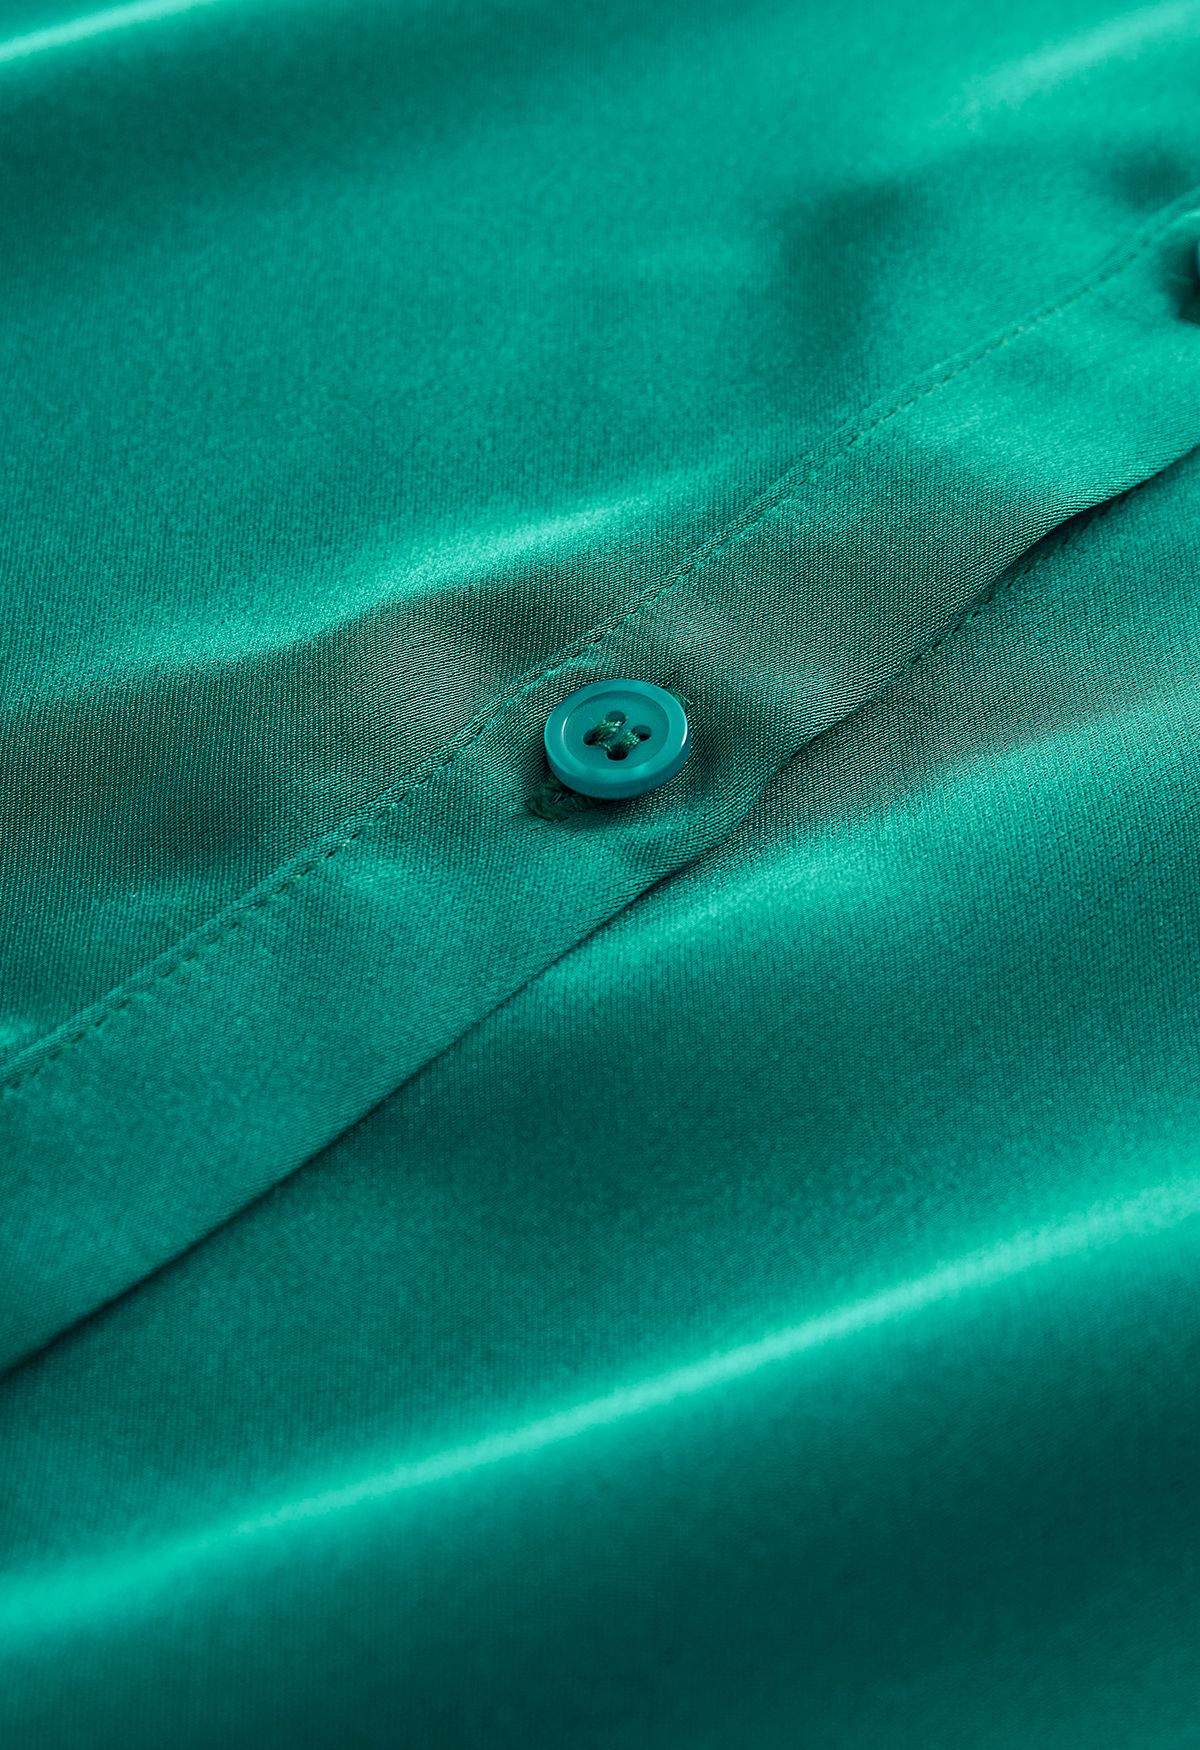 Camicia abbottonata con finitura satinata color smeraldo